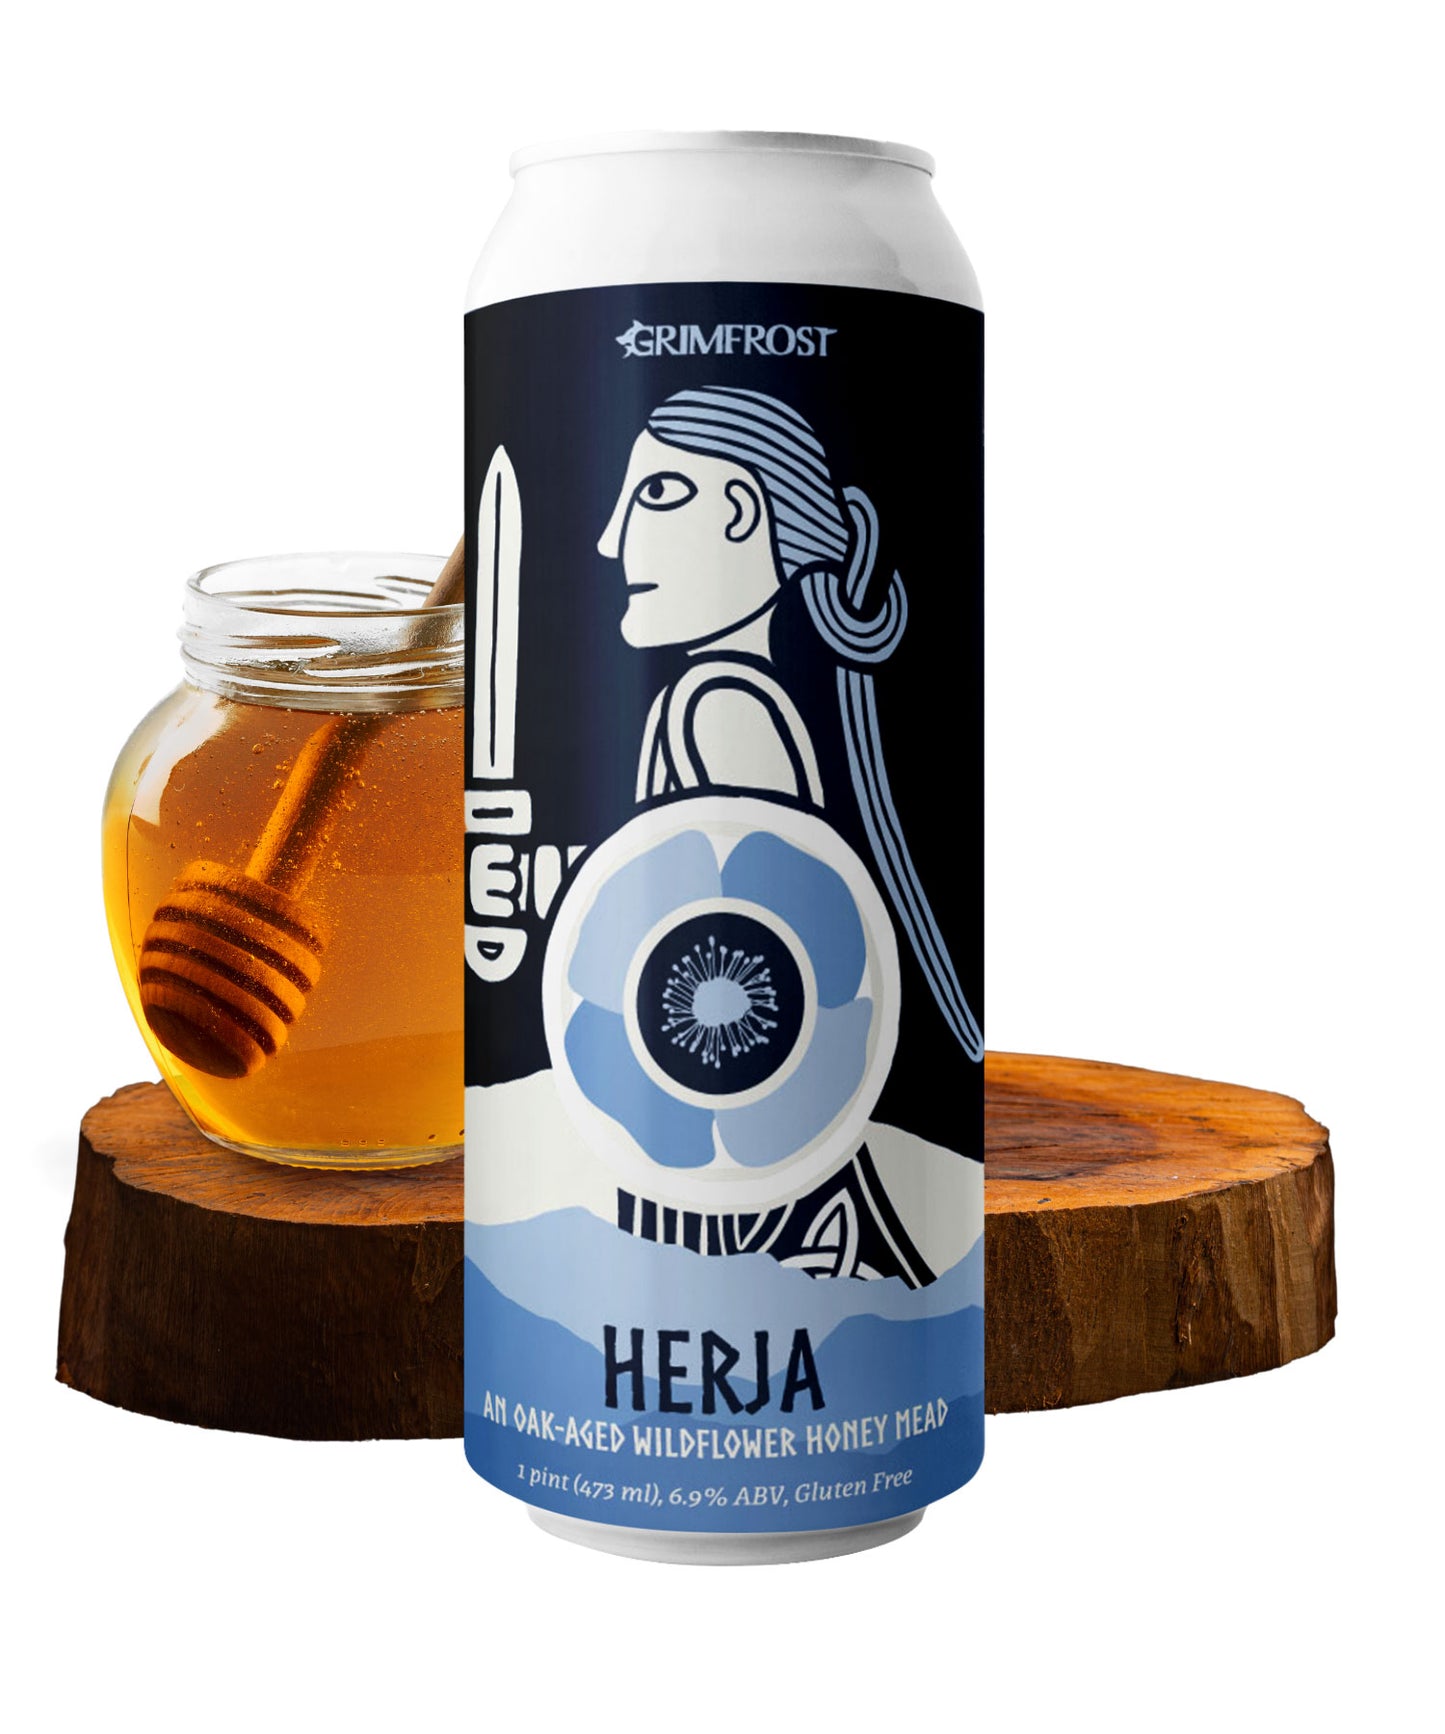 Herja Oak-Aged Wildflower Honey Mead by Grimfrost